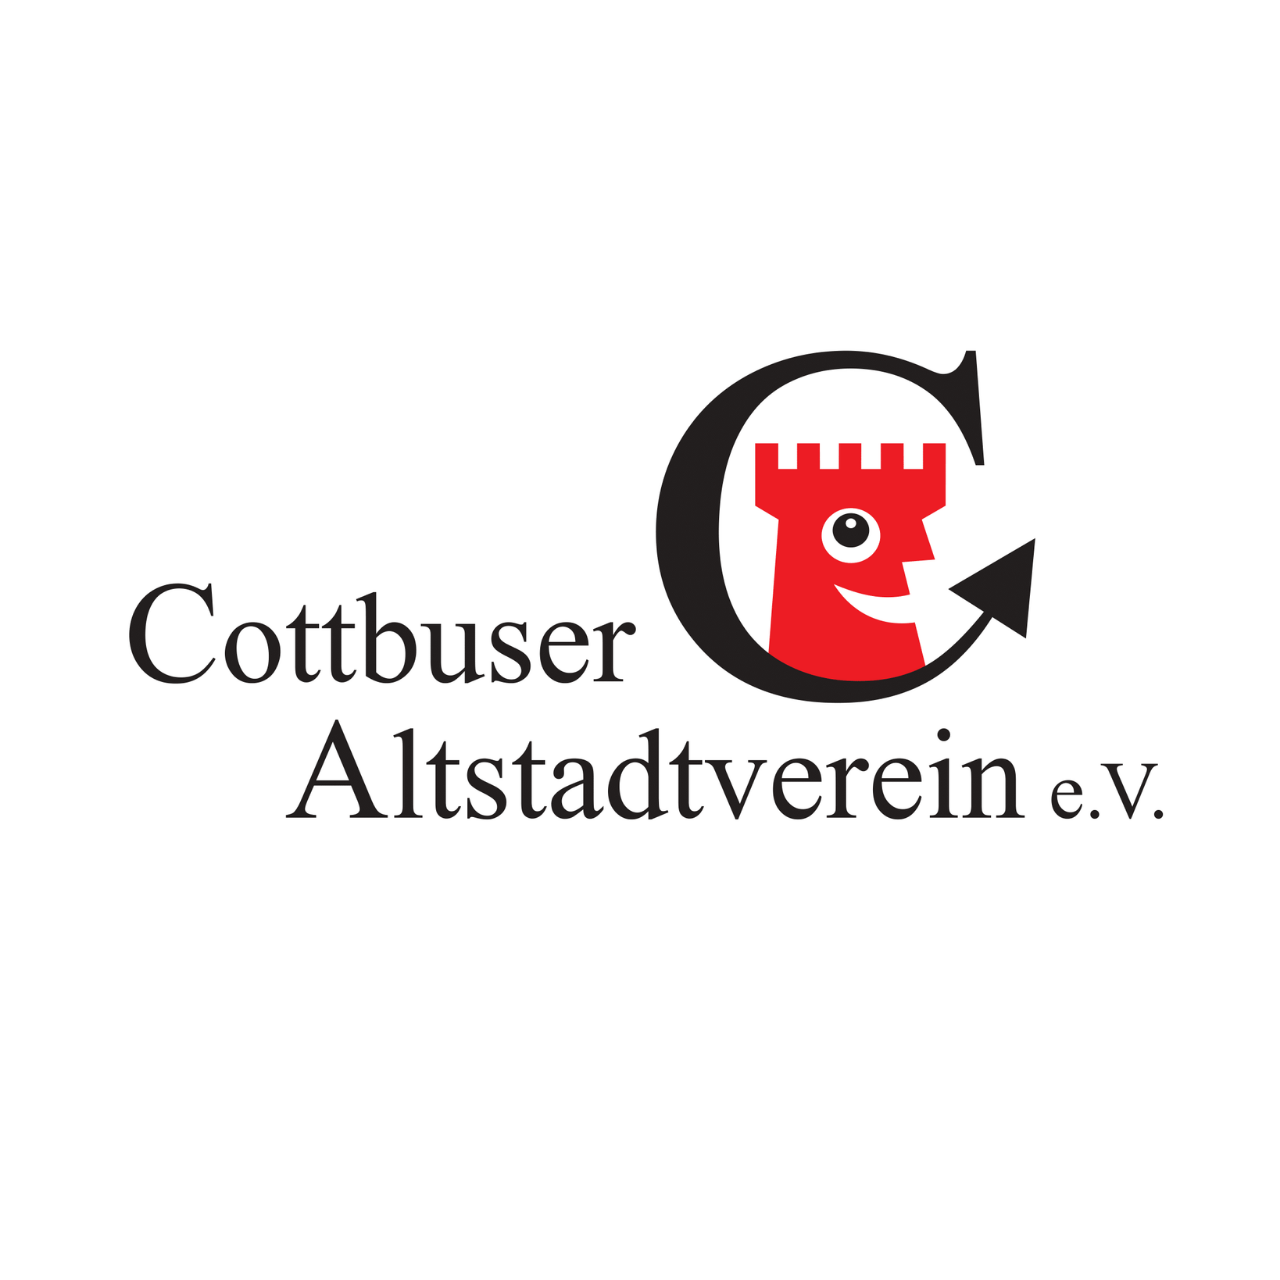 Cottbuser Altstadtverein